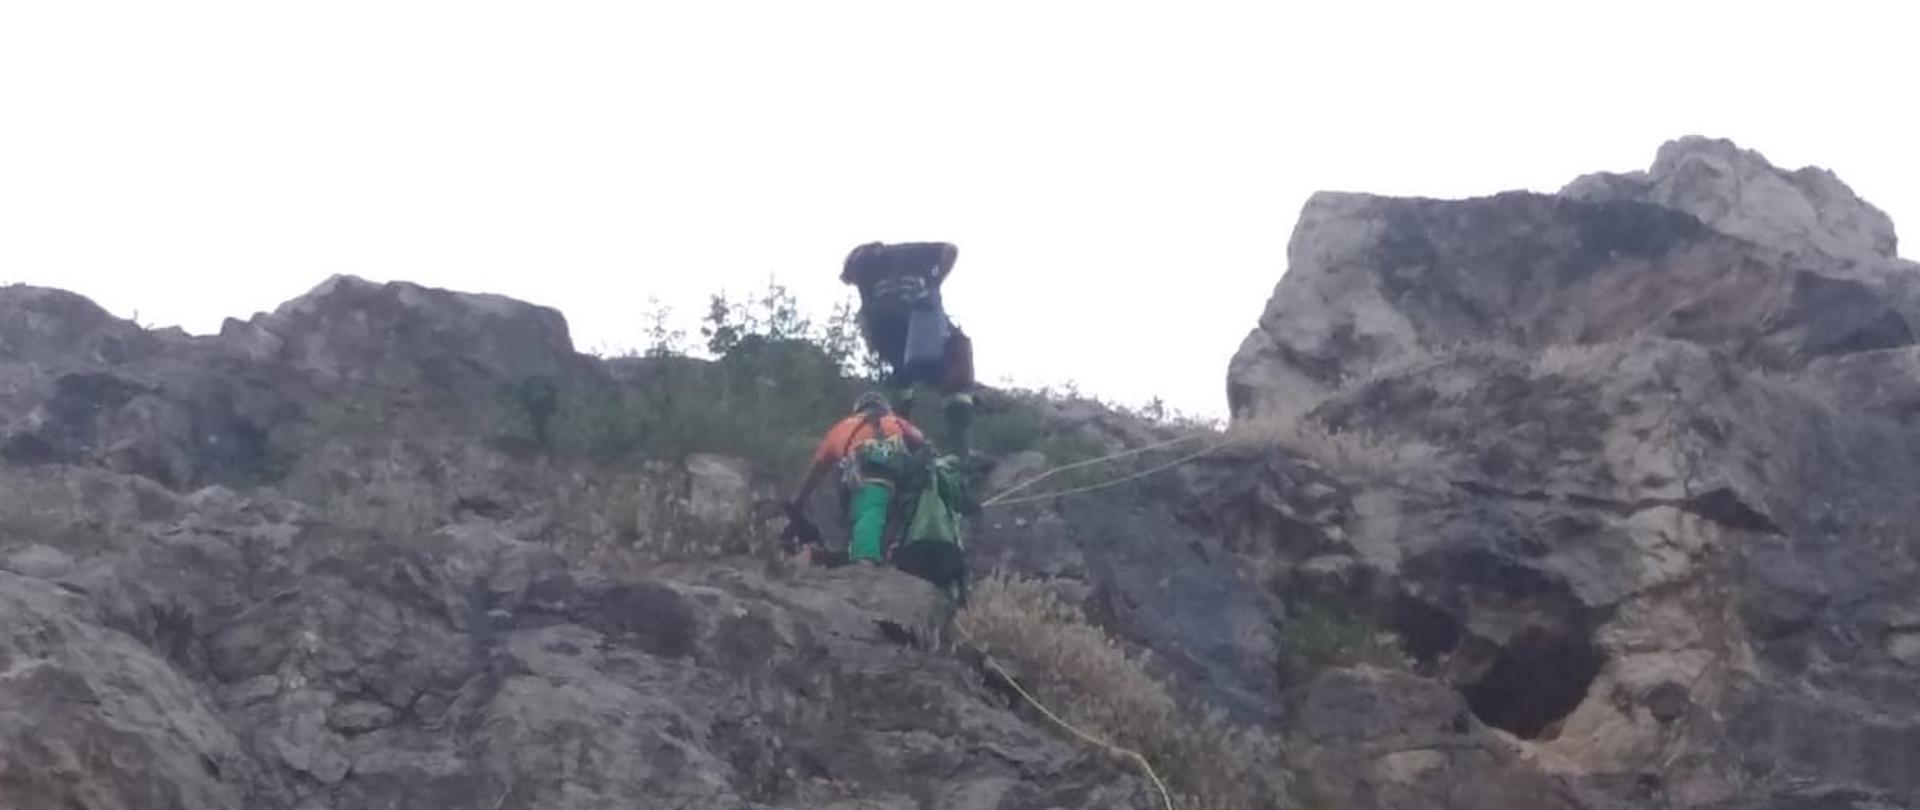 Zdjęcie przedstawia dwóch strażaków wspinających się po skałach w celu dotarcia do mężczyzny potrzebującego pomocy.